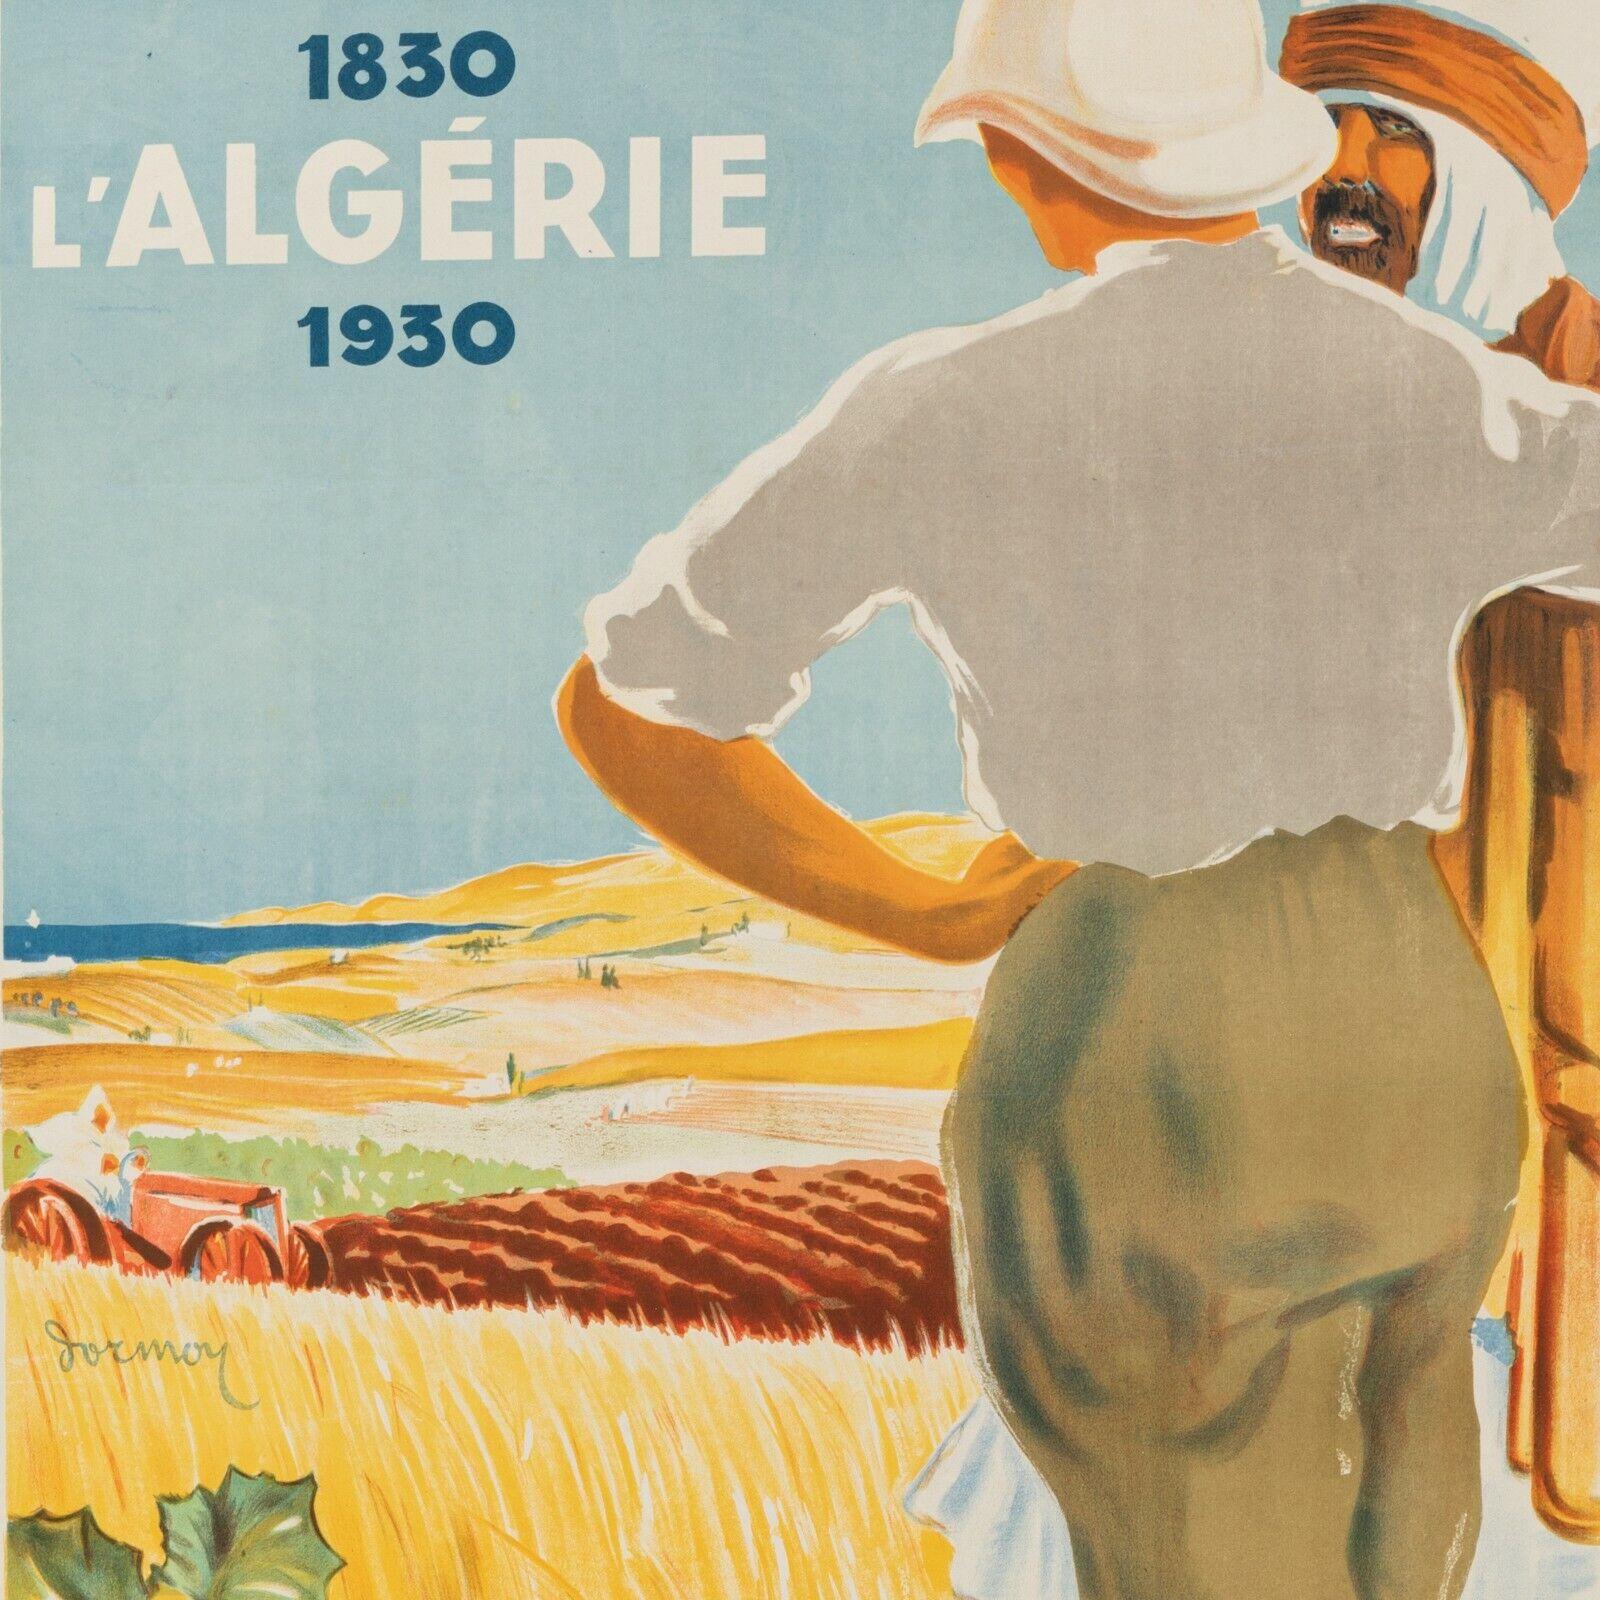 Affiche coloniale originale-Dormoy-Algérie 1830 1930-Farmland, 1930

Affiche originale célébrant le centenaire de la colonisation de l'Algérie entre 1830 et 1930. Nous voyons un colon et un local devant une terre agricole algérienne.

Détails